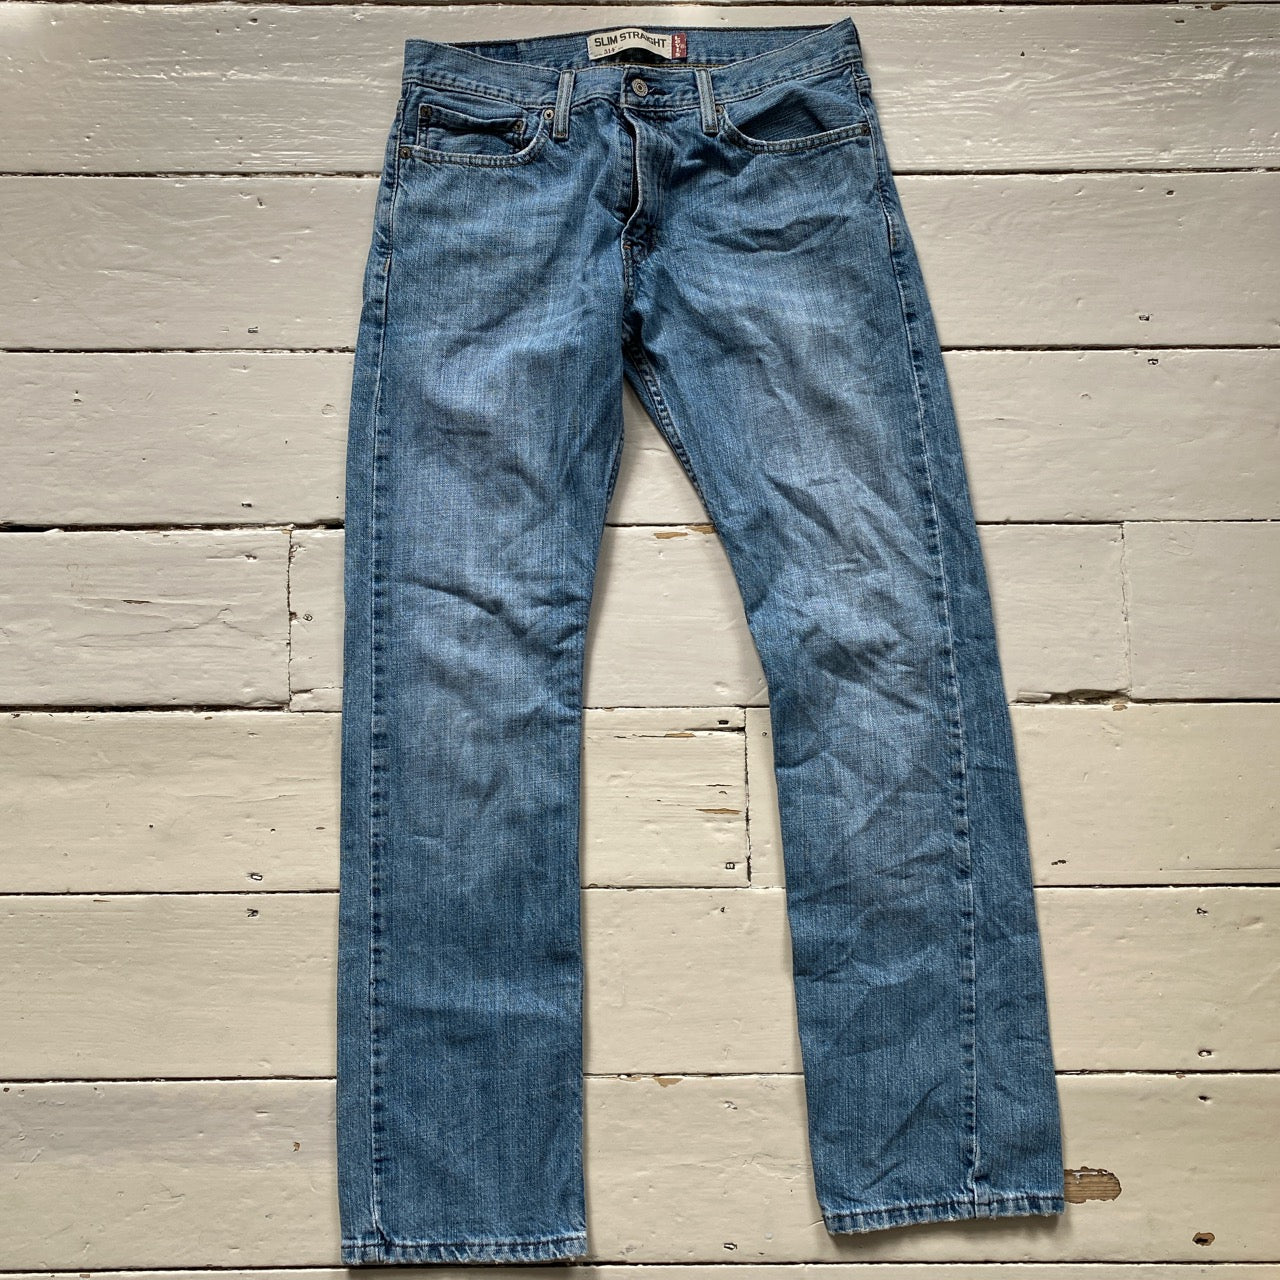 Levis 514 Light Wash Jeans (32/32)